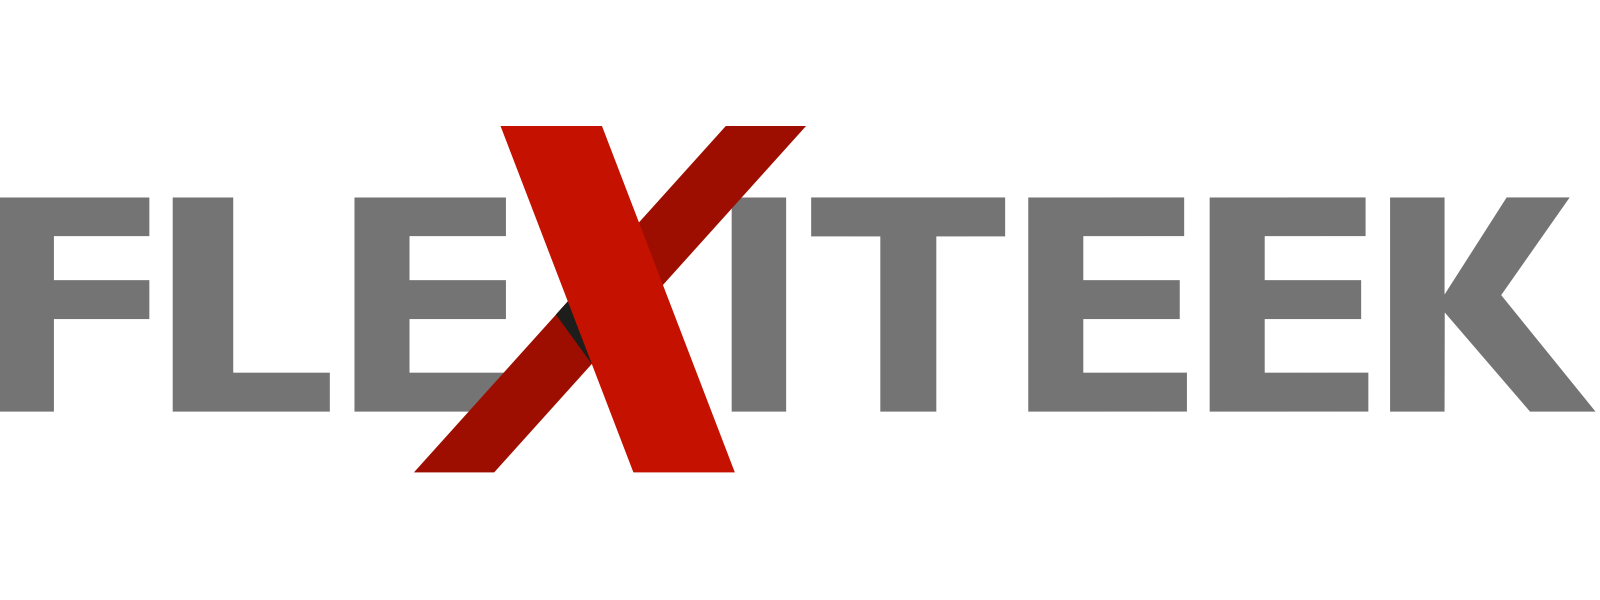 Flexiteek logo